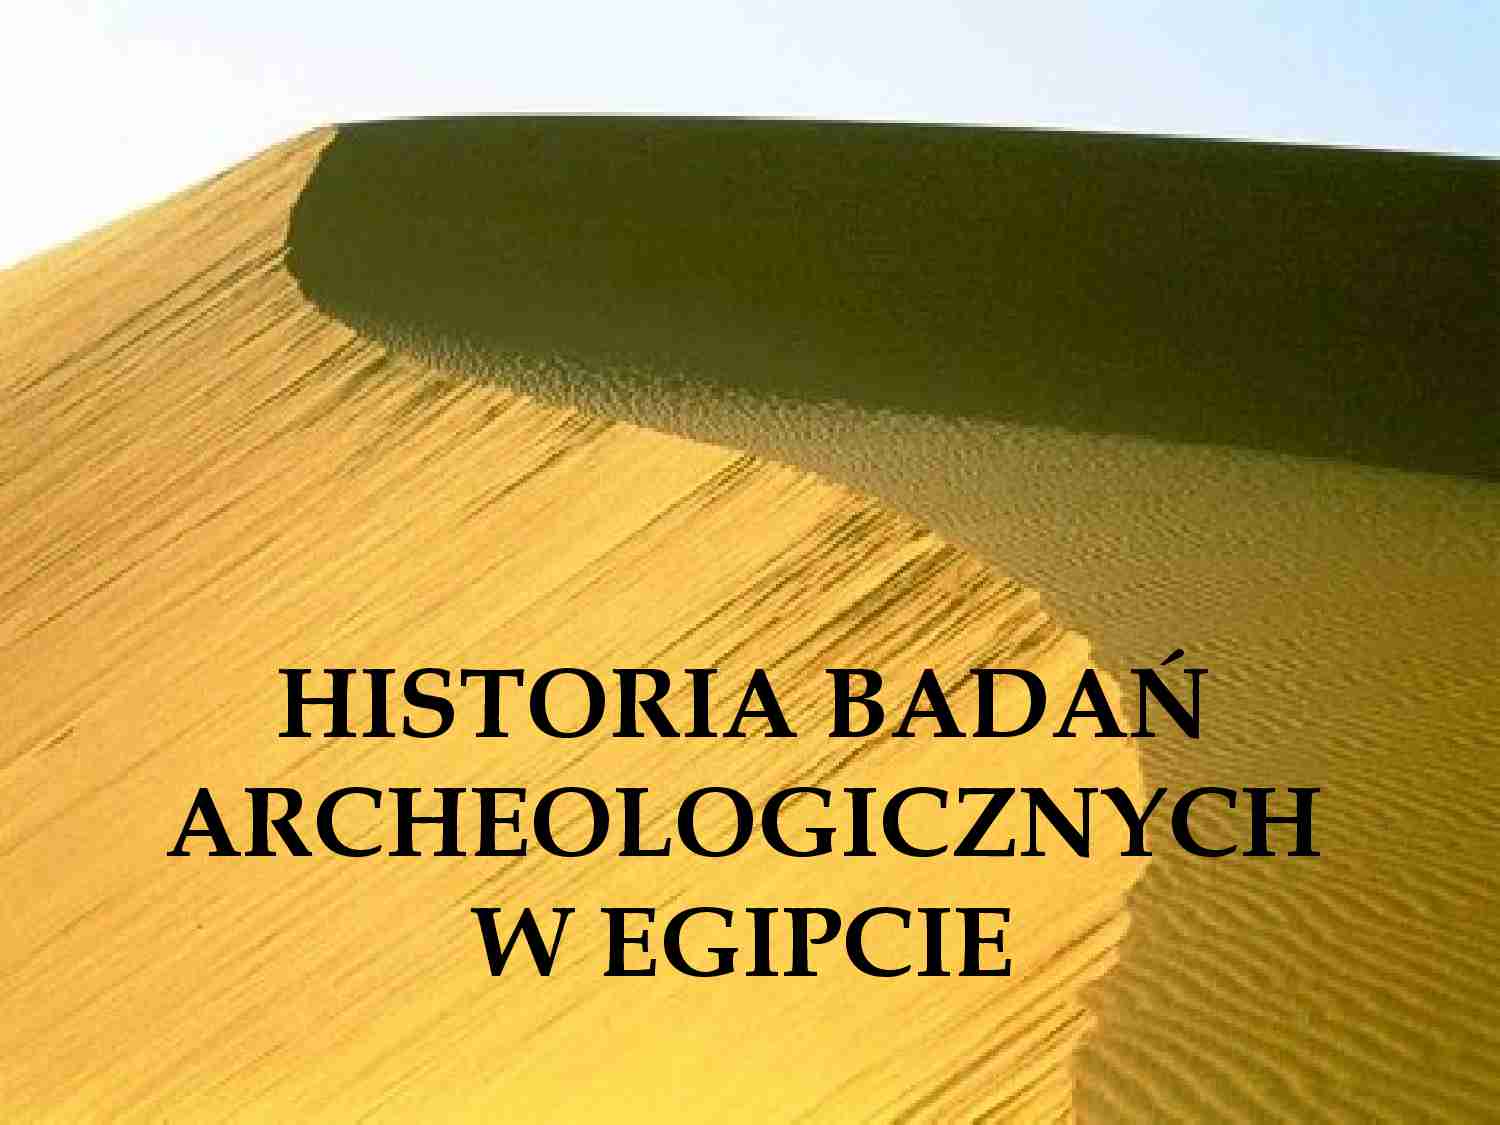 Historia badań archeologicznych w Egipcie. - strona 1